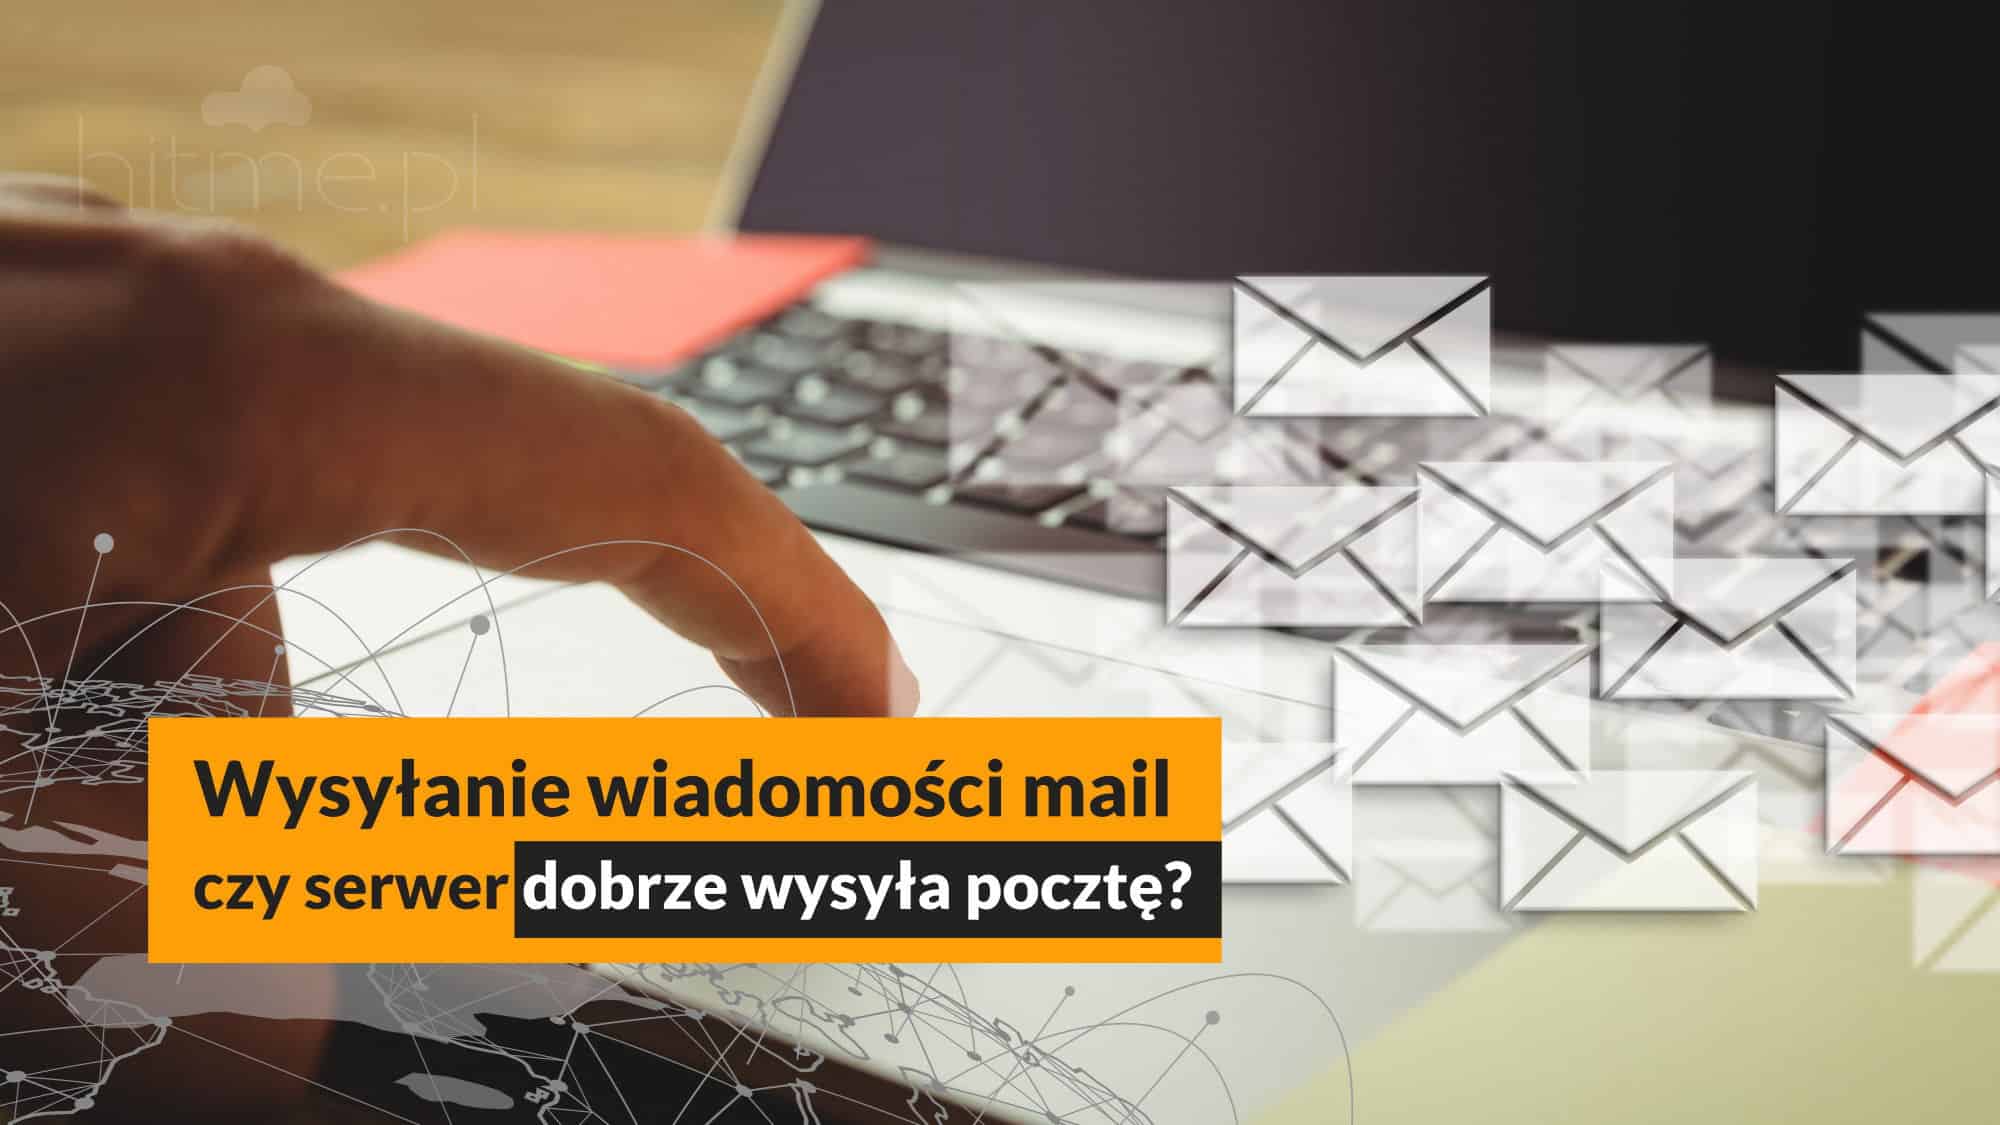 Obrazek dla Jak sprawdzić czy serwer dobrze wysyła pocztę?